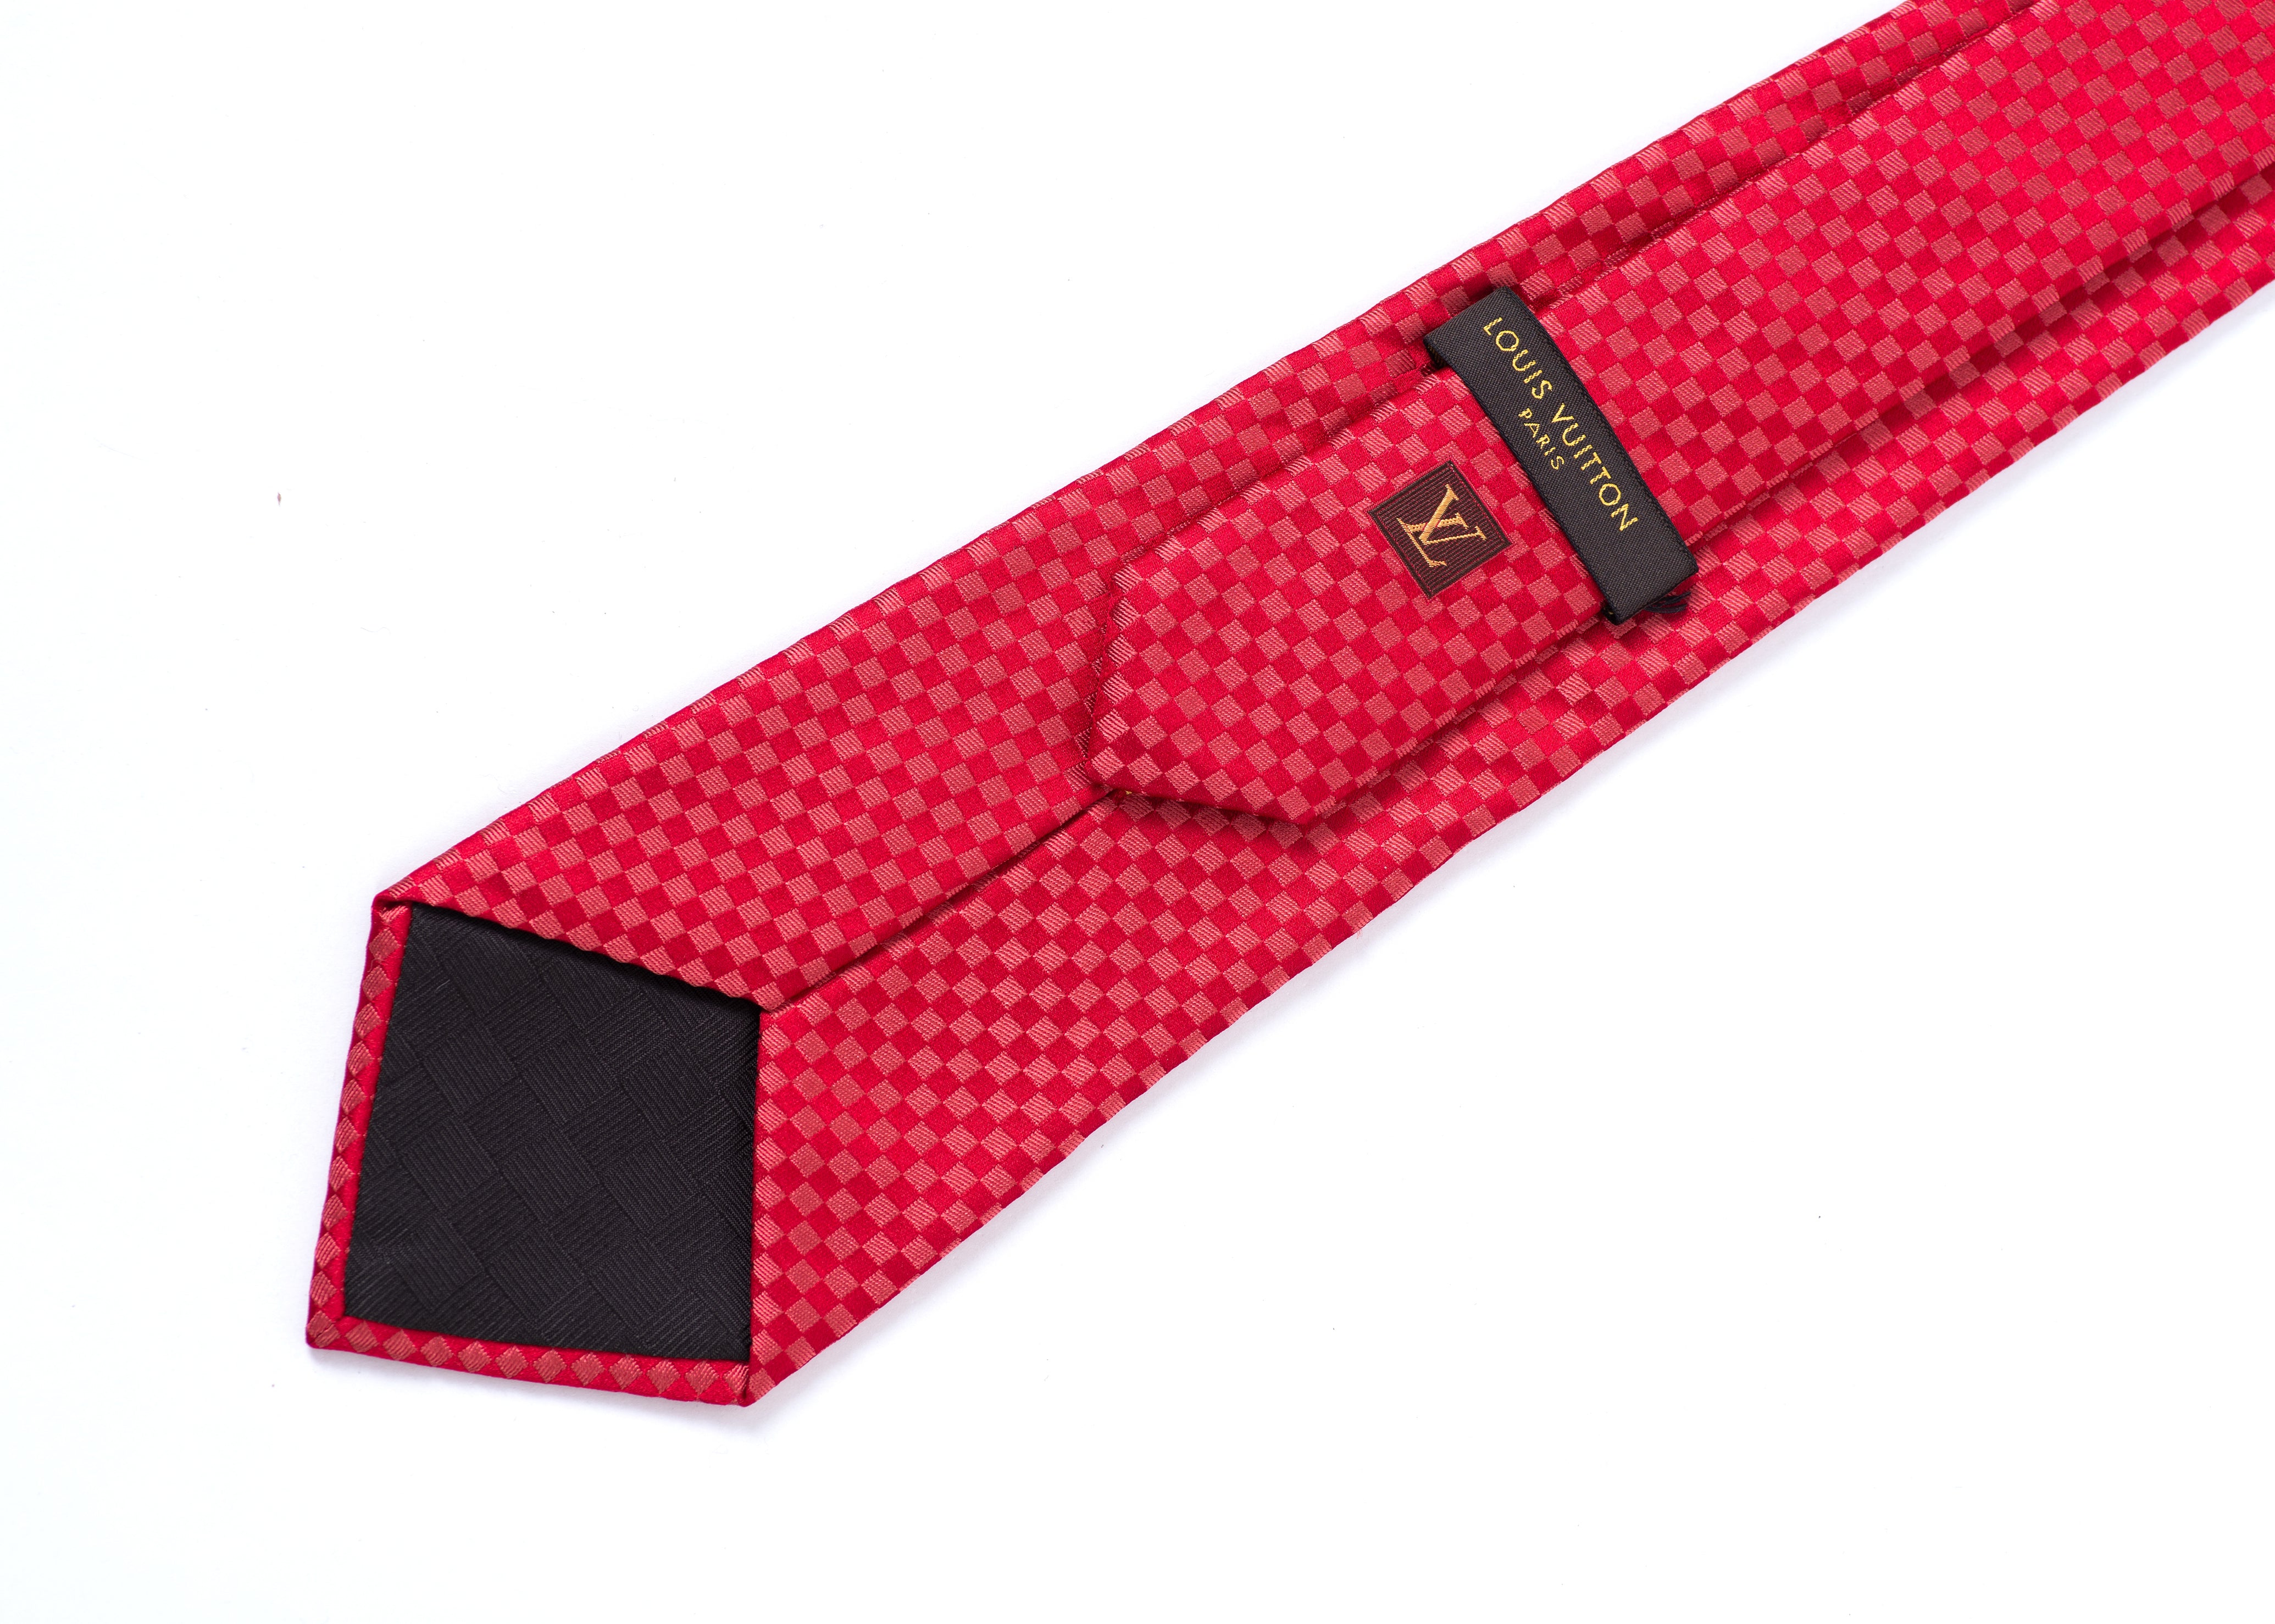 Damier Spread Silk Necktie MP3352 – LuxUness